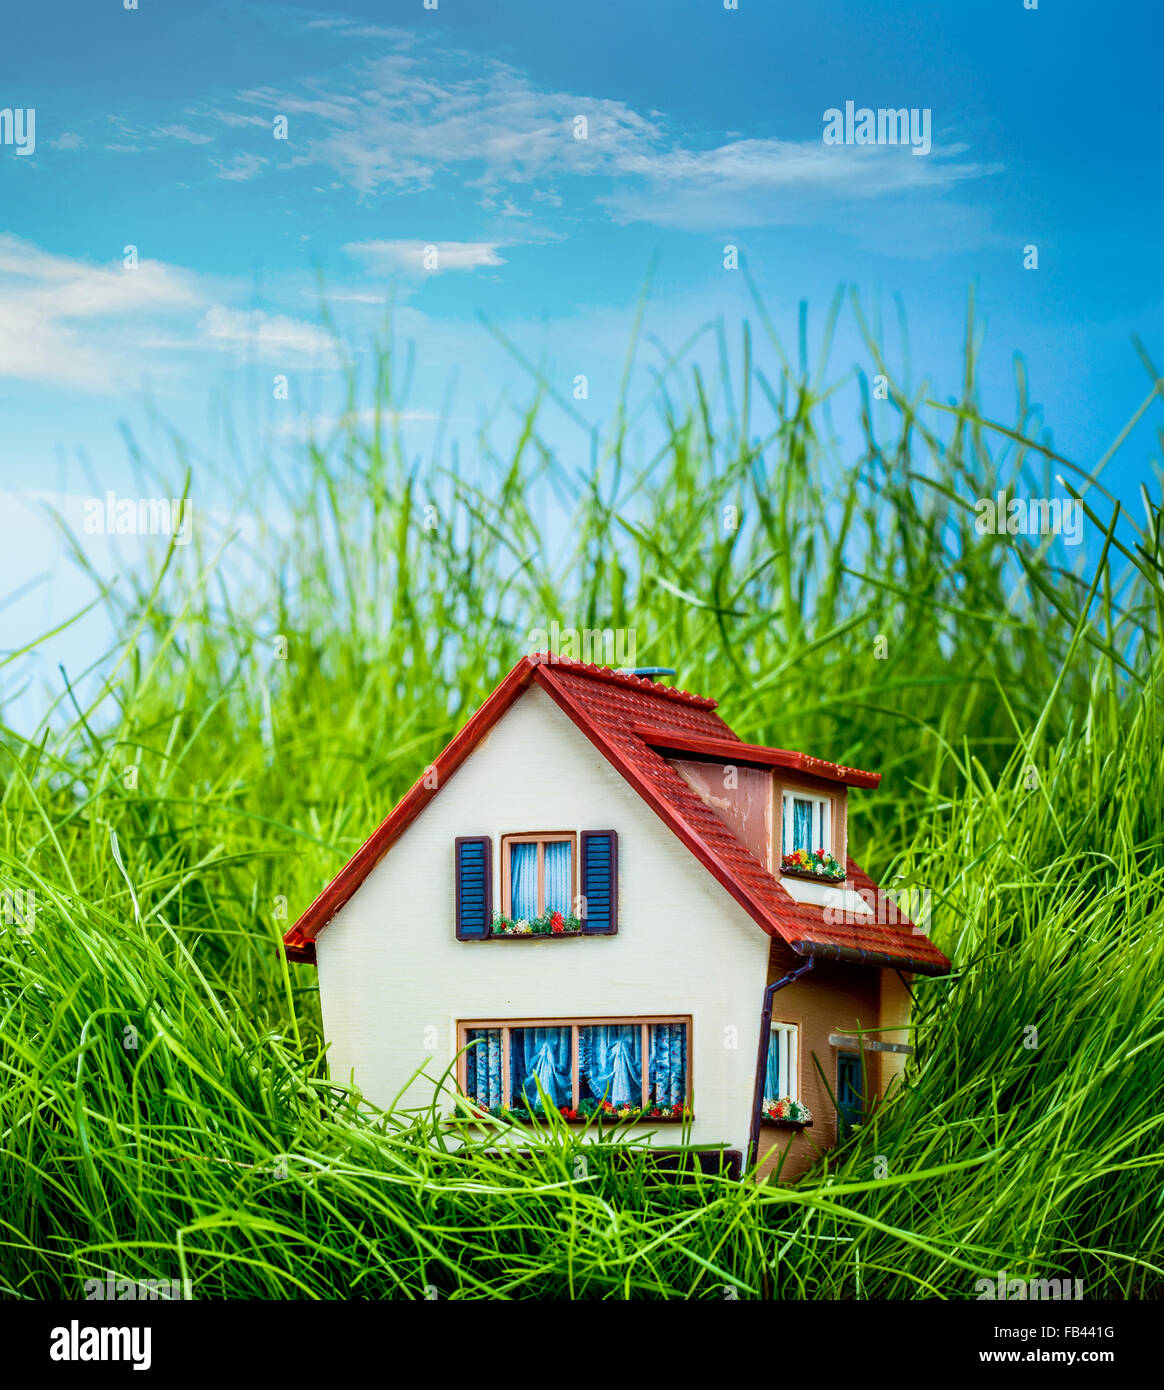 Petite maison sur l'herbe verte Banque D'Images